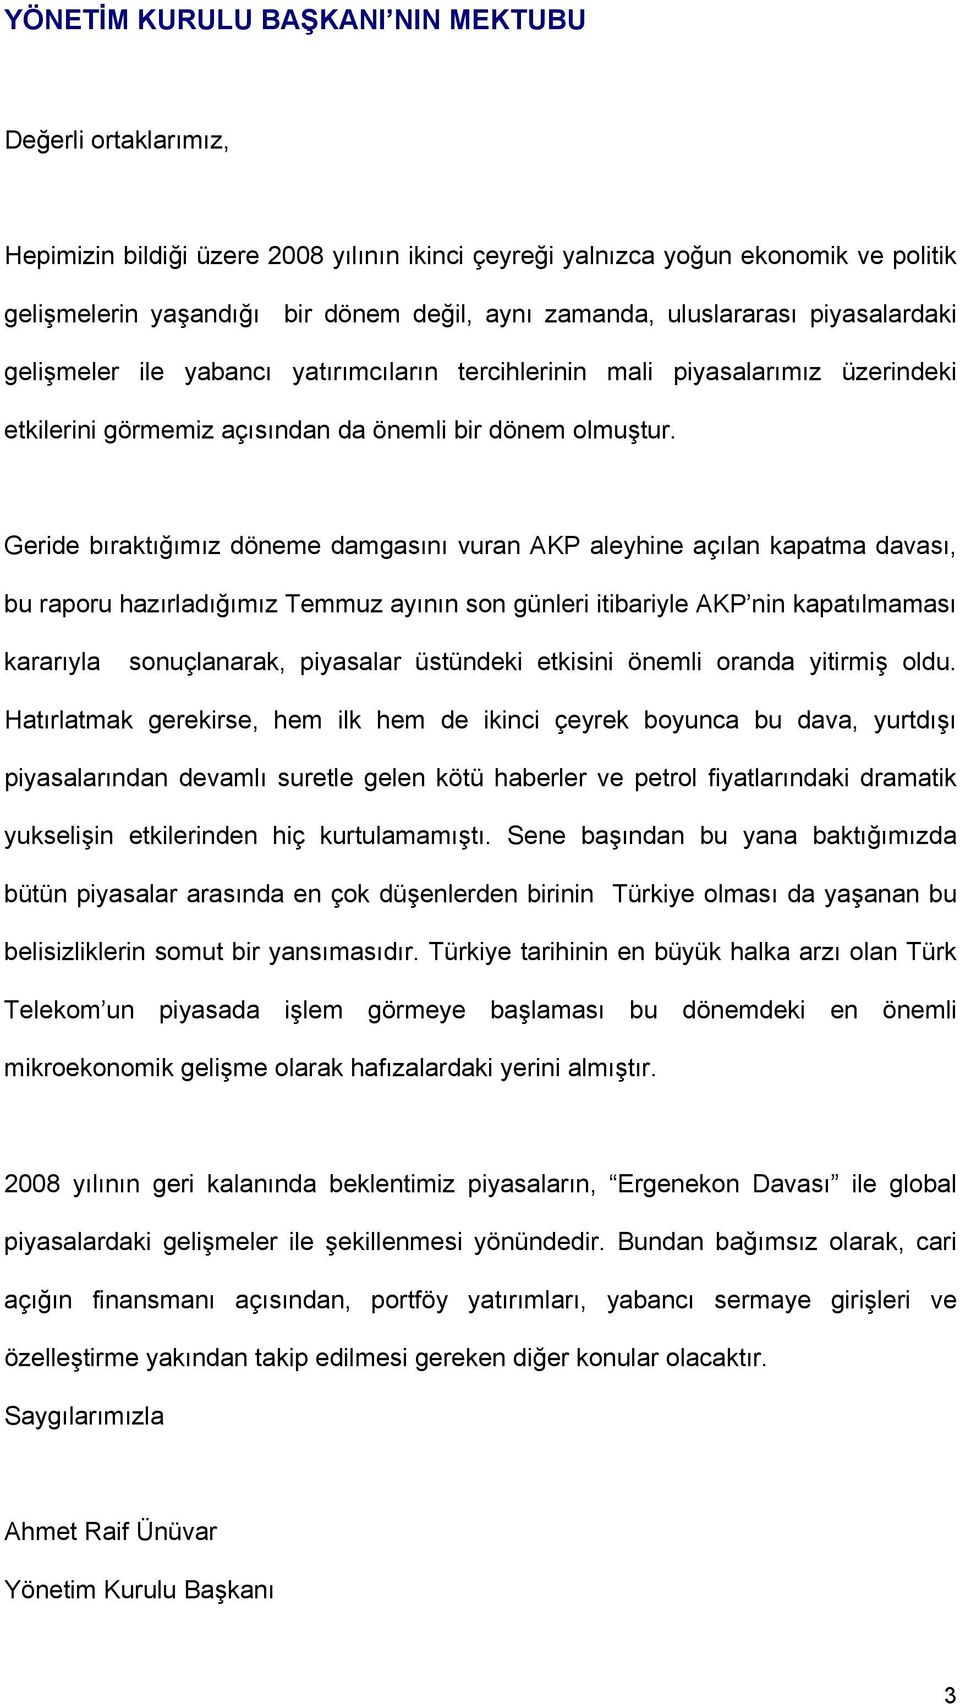 Geride bıraktığımız döneme damgasını vuran AKP aleyhine açılan kapatma davası, bu raporu hazırladığımız Temmuz ayının son günleri itibariyle AKP nin kapatılmaması kararıyla sonuçlanarak, piyasalar